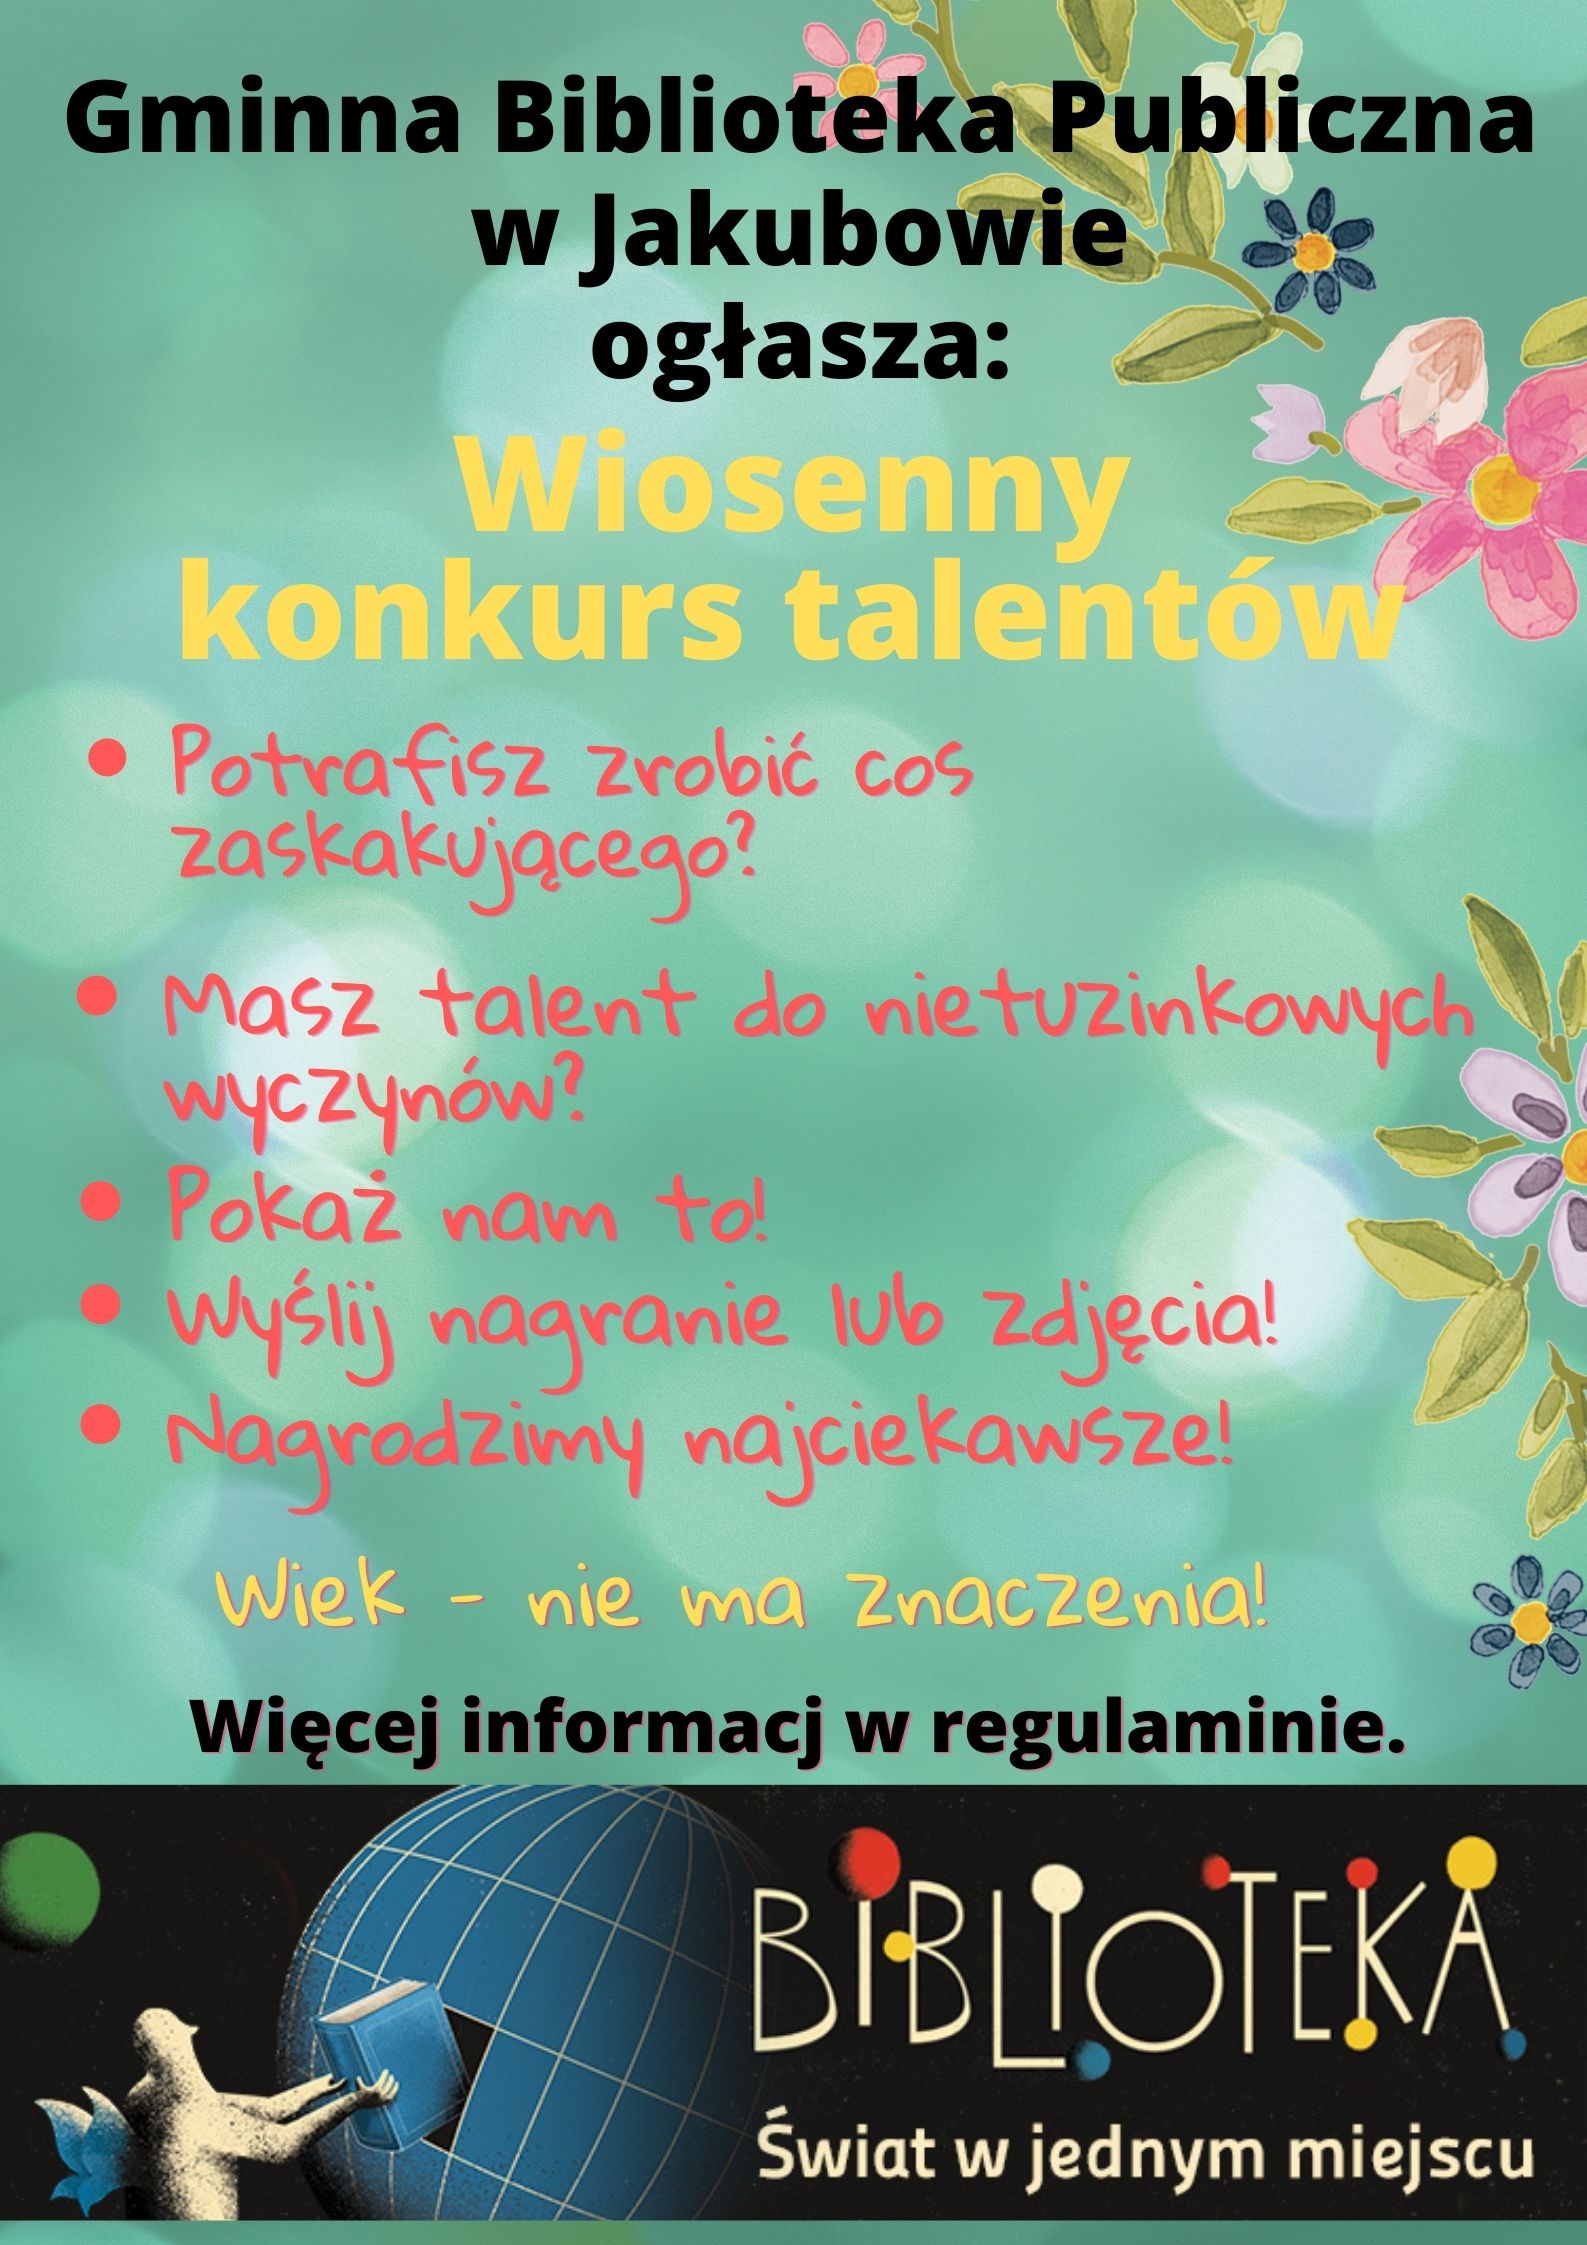 Na zdjęciu: plakat - graficzna oferta konkursu talentów.